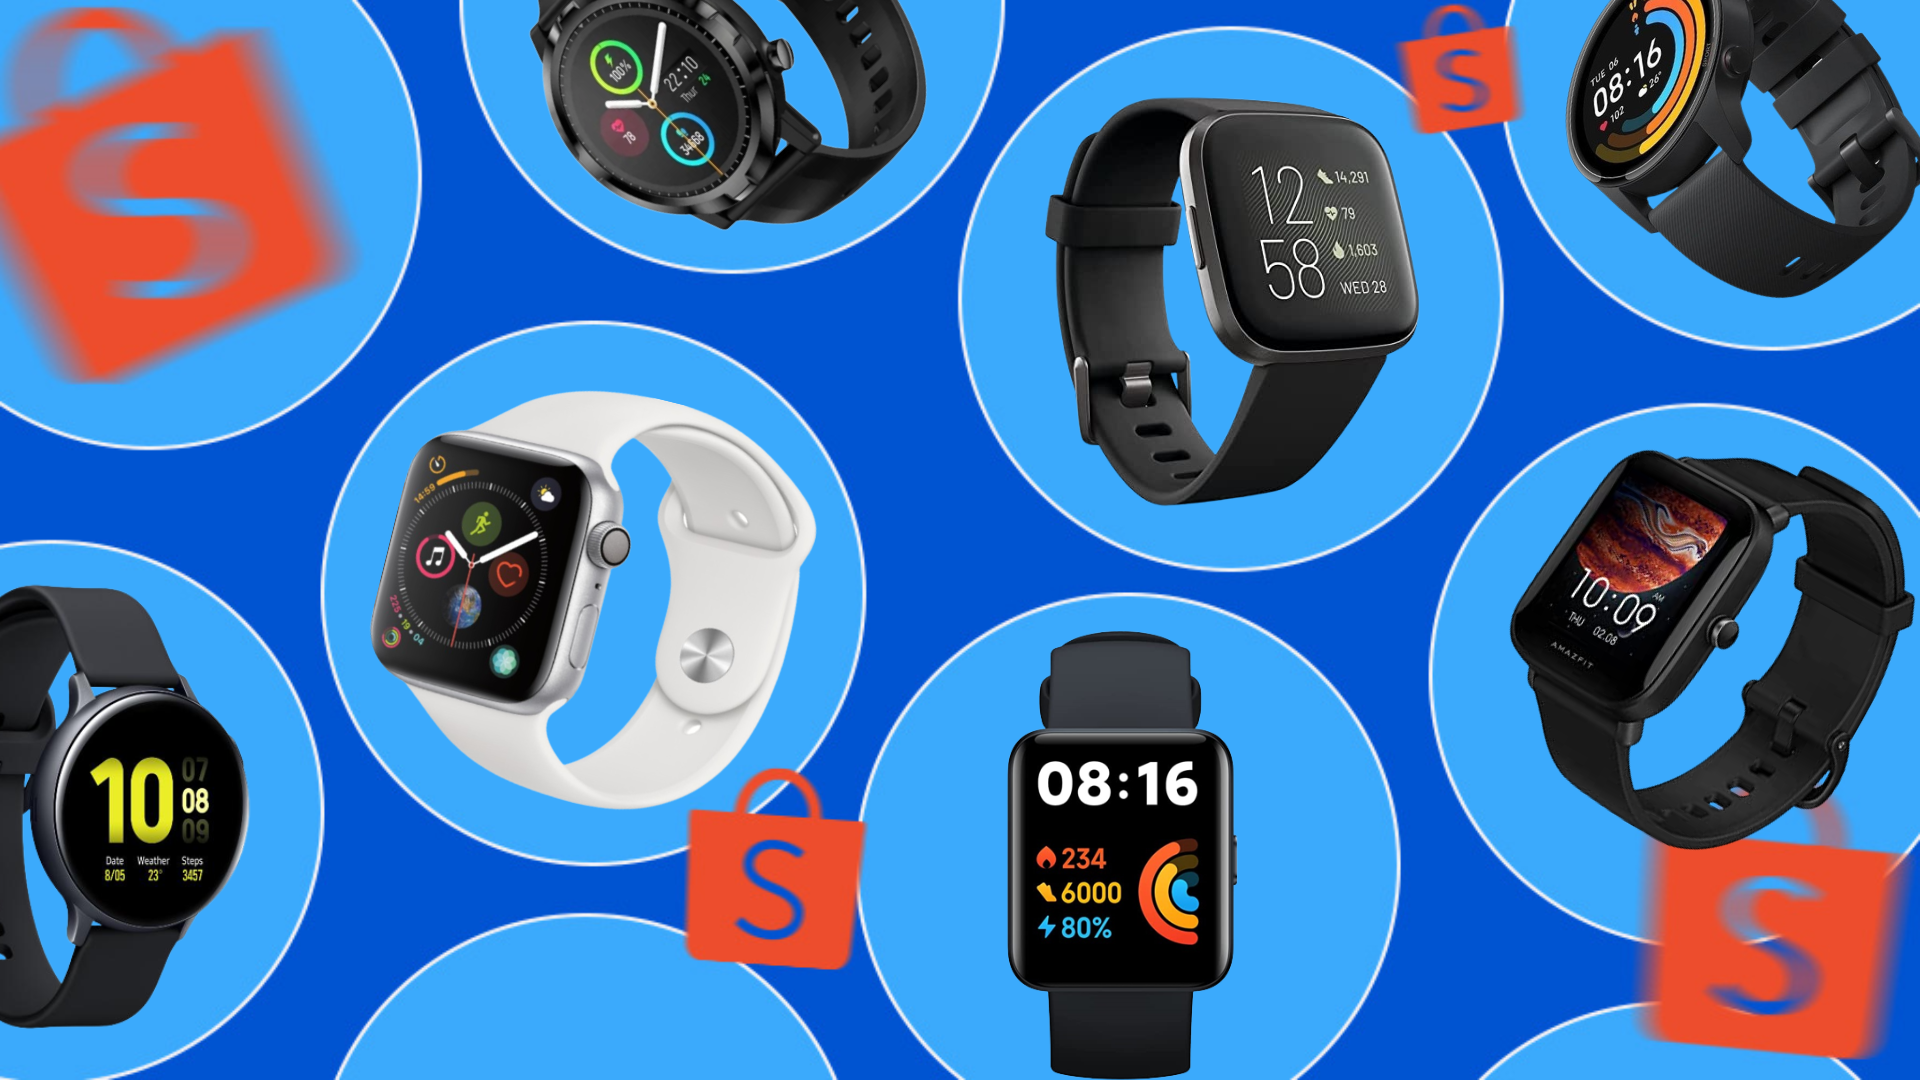 Como escolher um smartwatch, o relógio inteligente, Guia de Compras